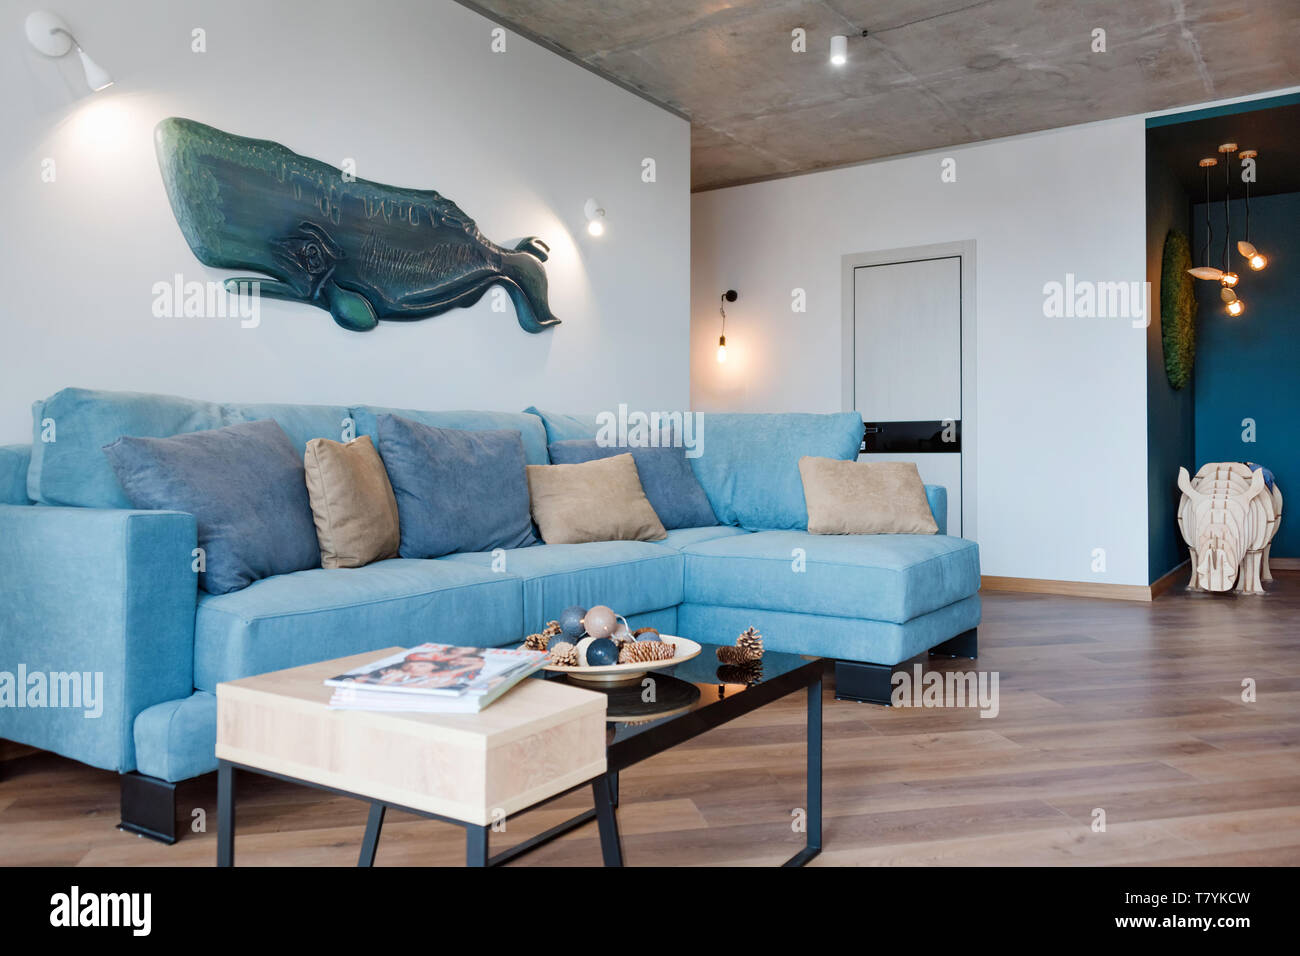 Minimalistischen Modernen Wohnzimmer Mit Sofa Im Loft Stil